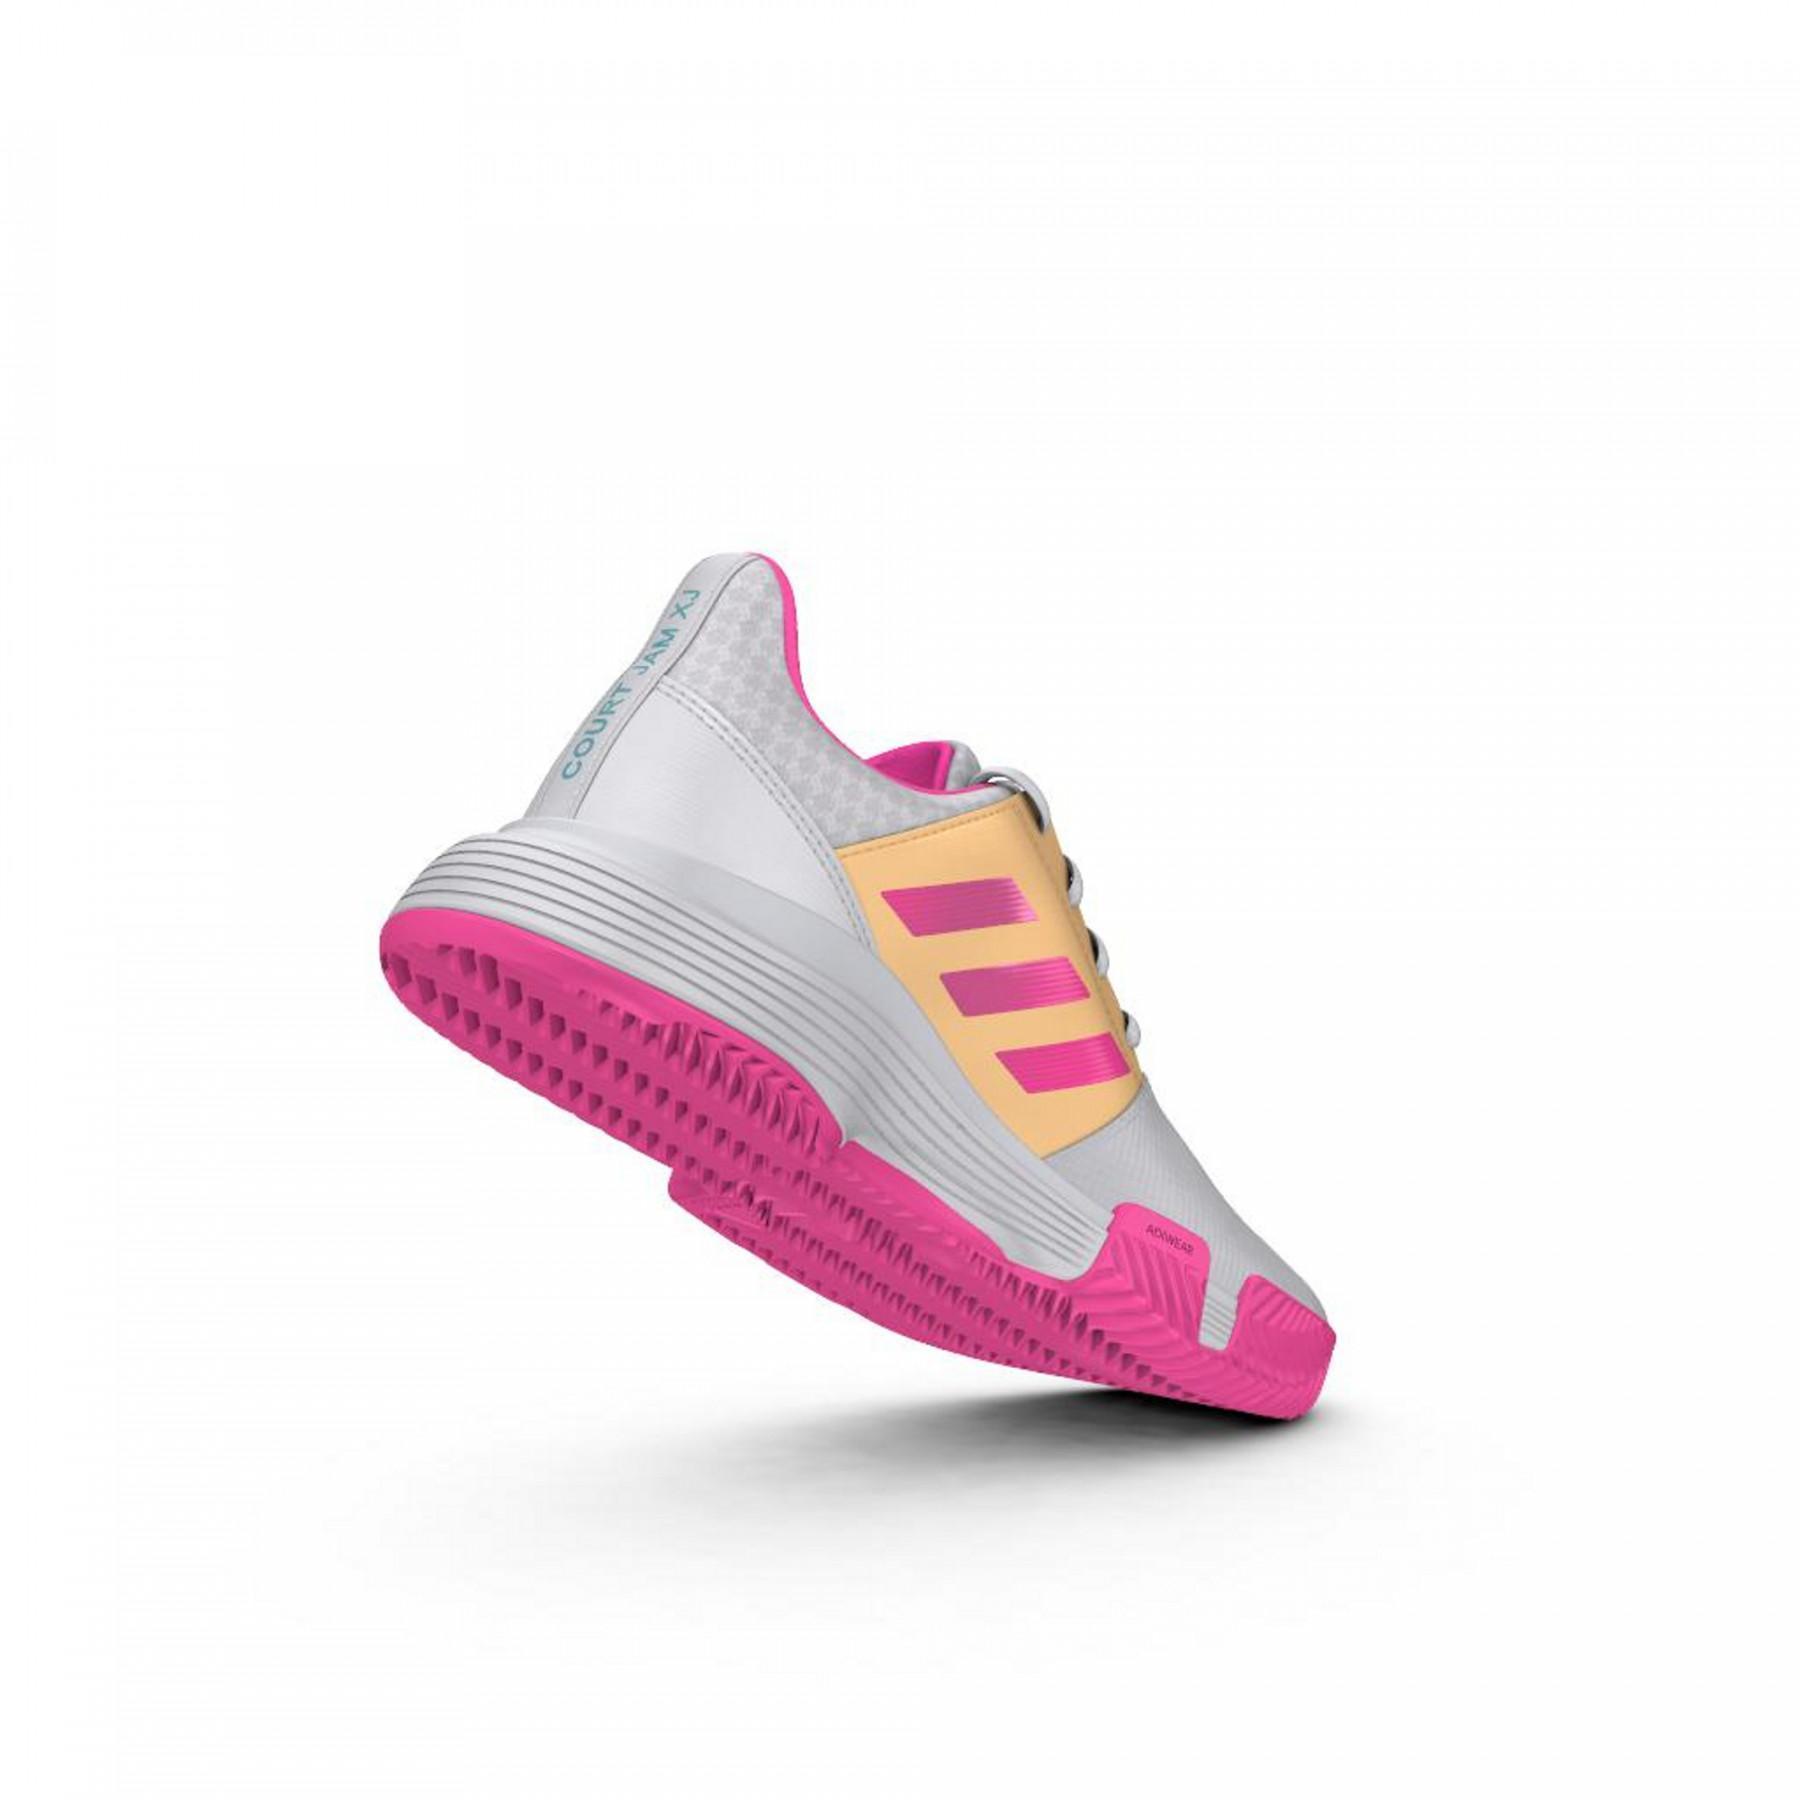 Zapatos para niños adidas CourtJam Tennis